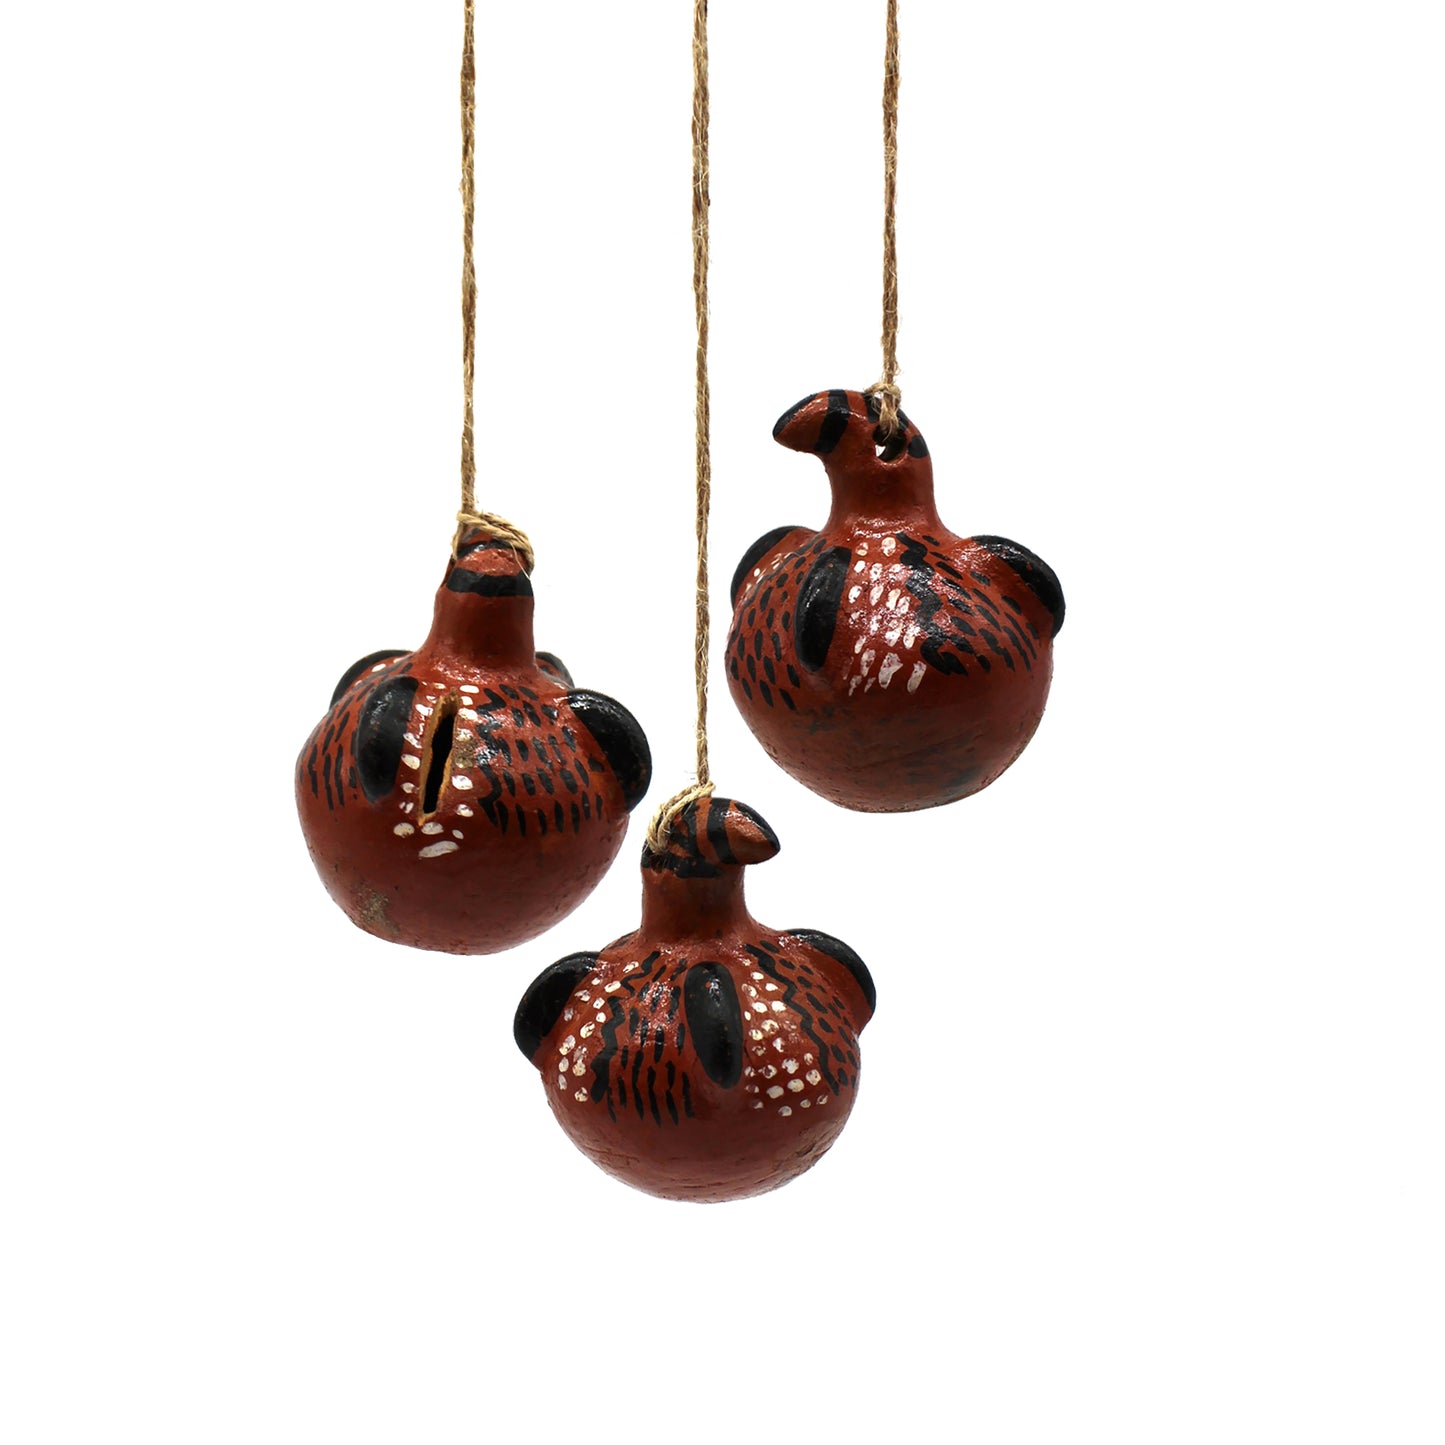 Ceramic Handpainted hanging Decoration